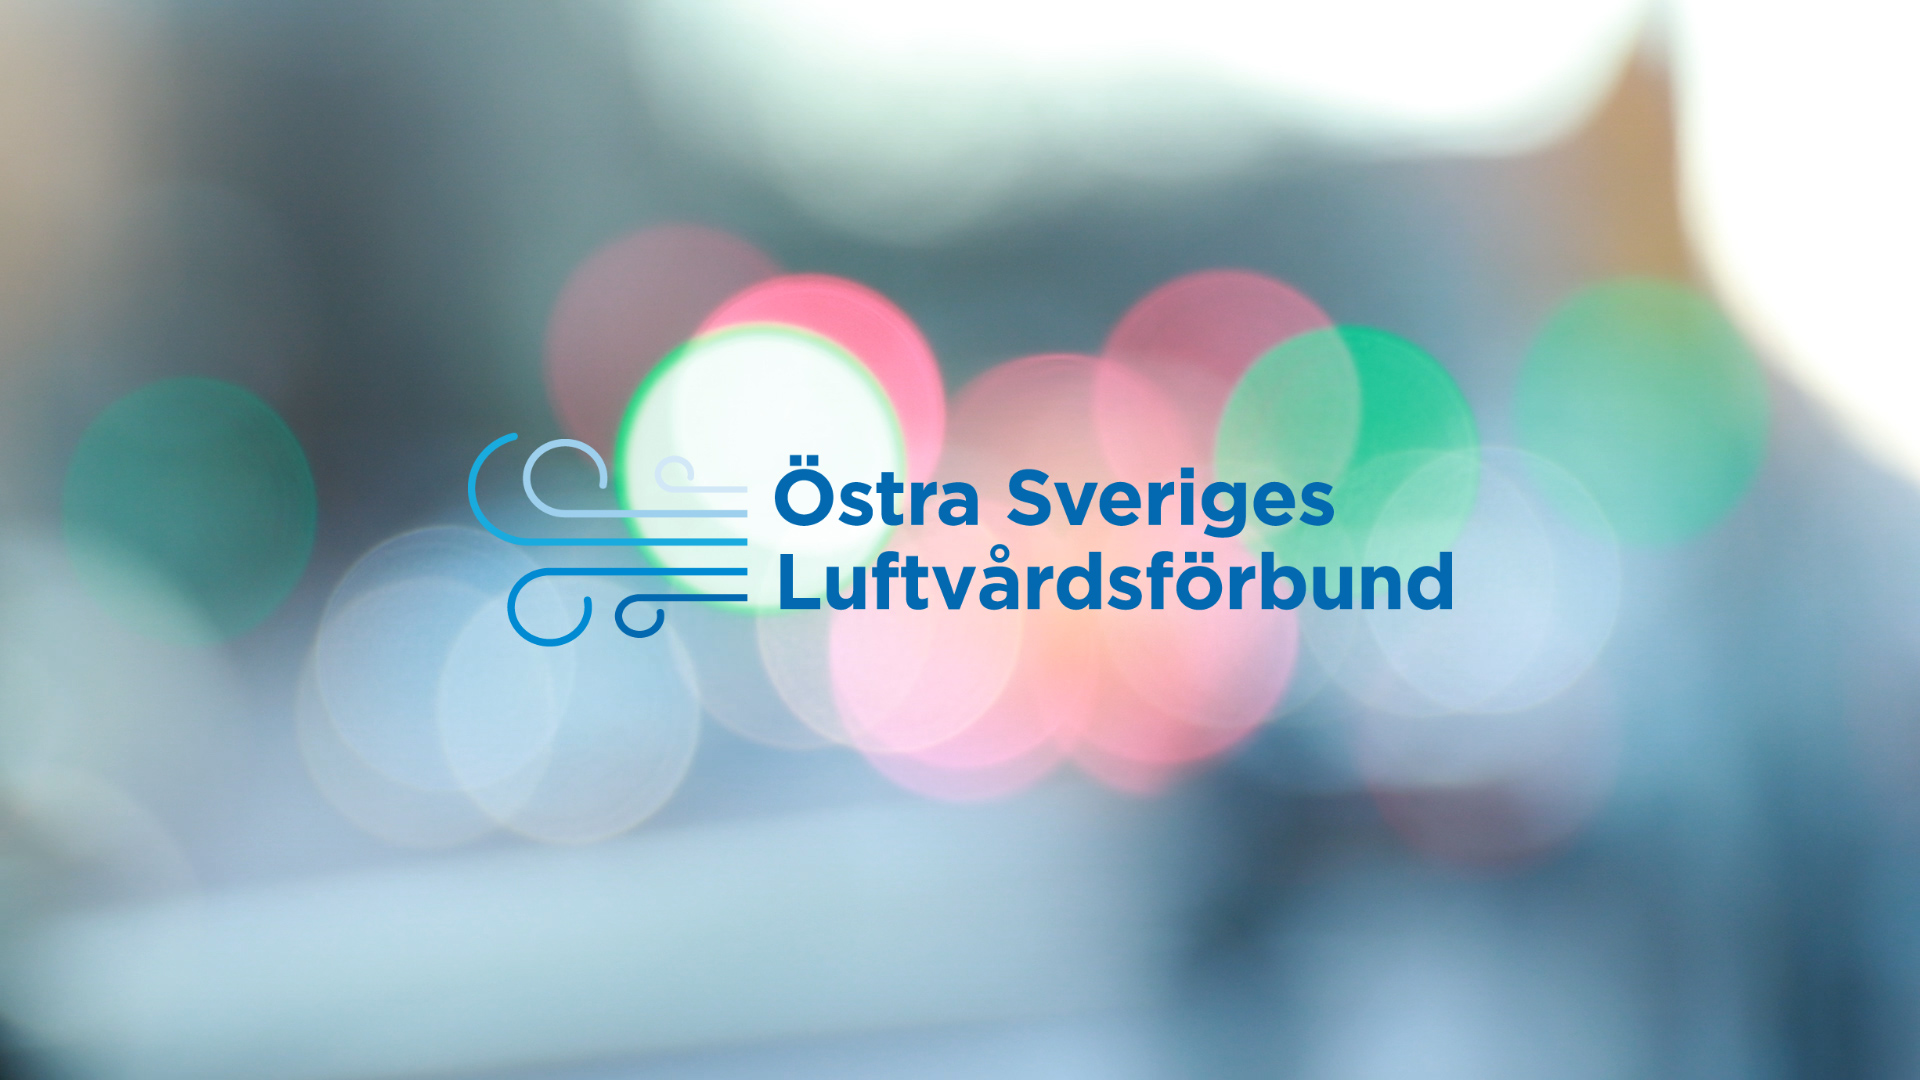 SLB-analys uppdrag från Östra Sveriges Luftvårdsförbund image.